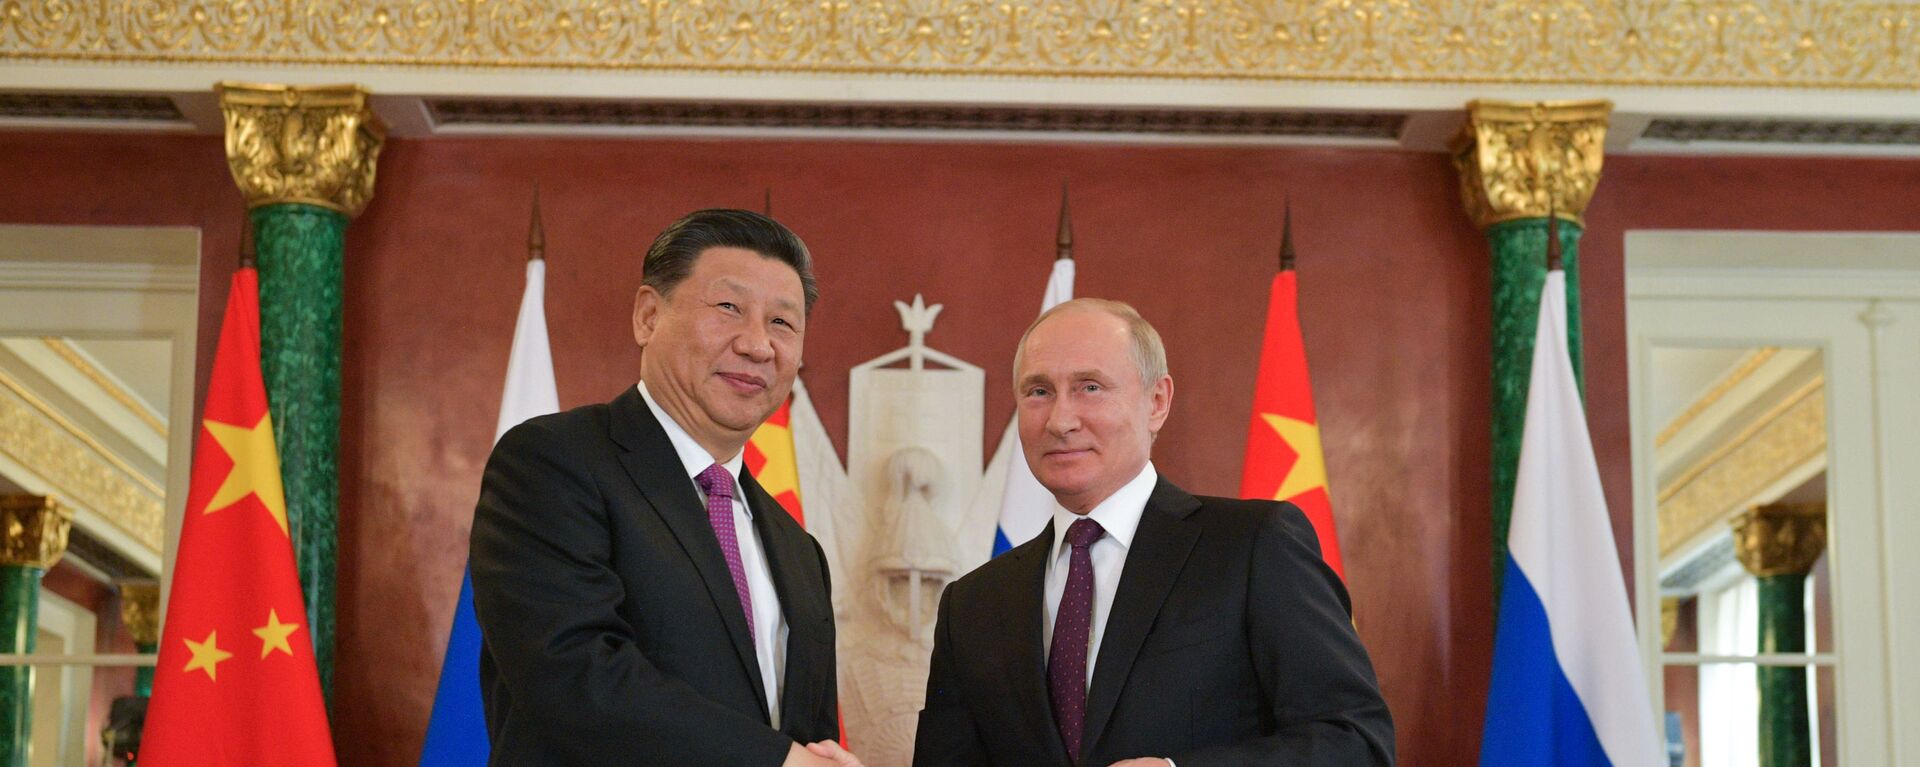 Президент России Владимир Путин и его китайский коллега Си Цзиньпин - Sputnik Таджикистан, 1920, 20.12.2021